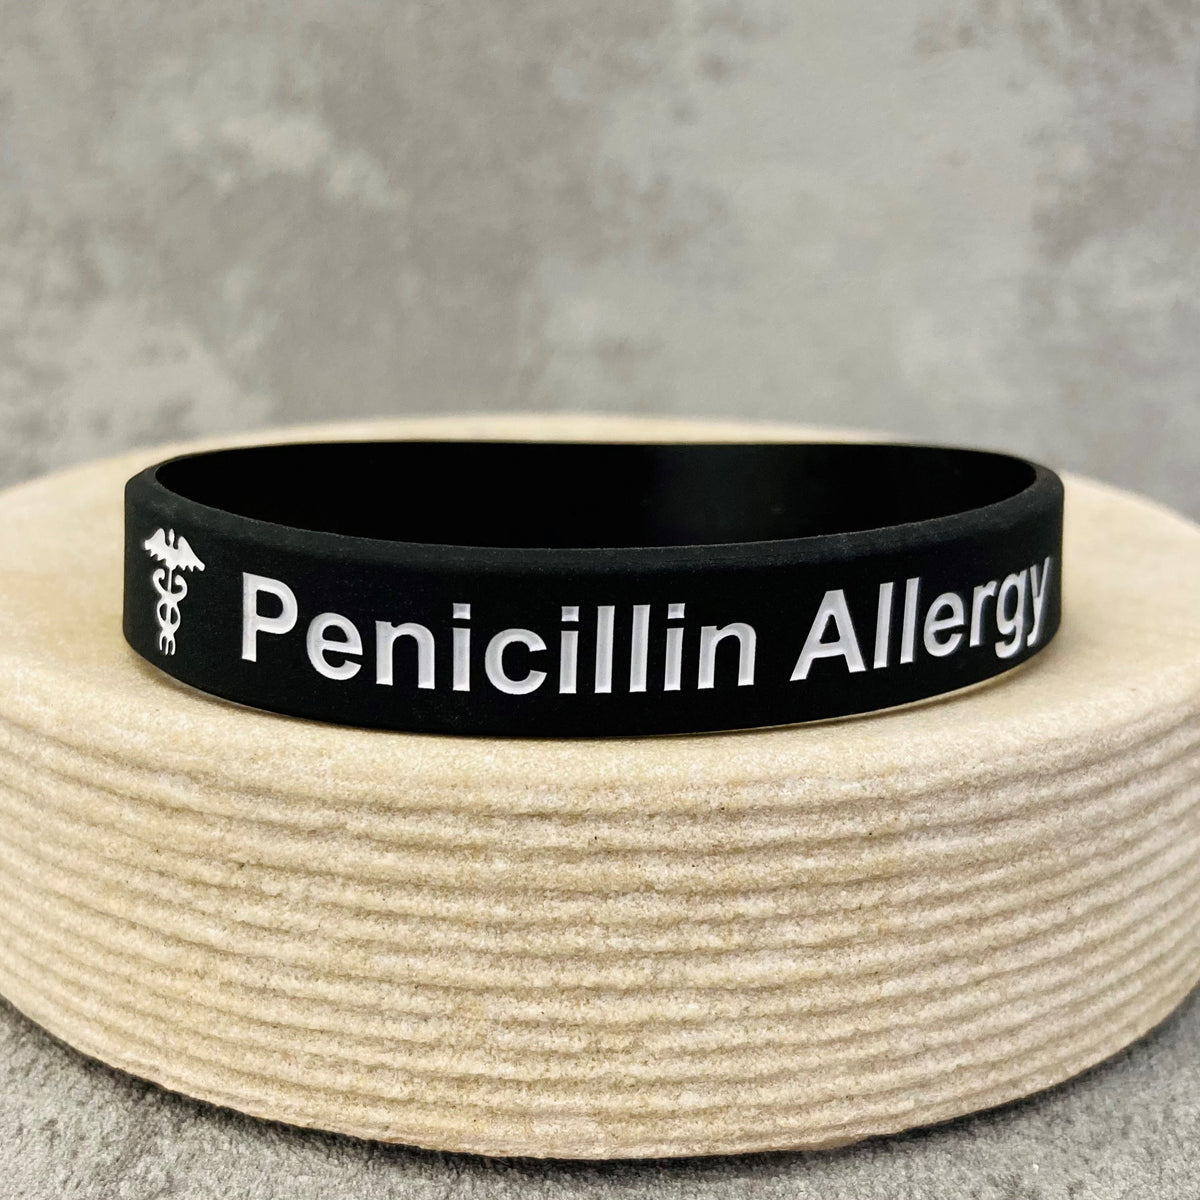 Multi-Food Allergy Bracelet Kit Original Allermates Band Peanut Nut Wheat  Charms | eBay